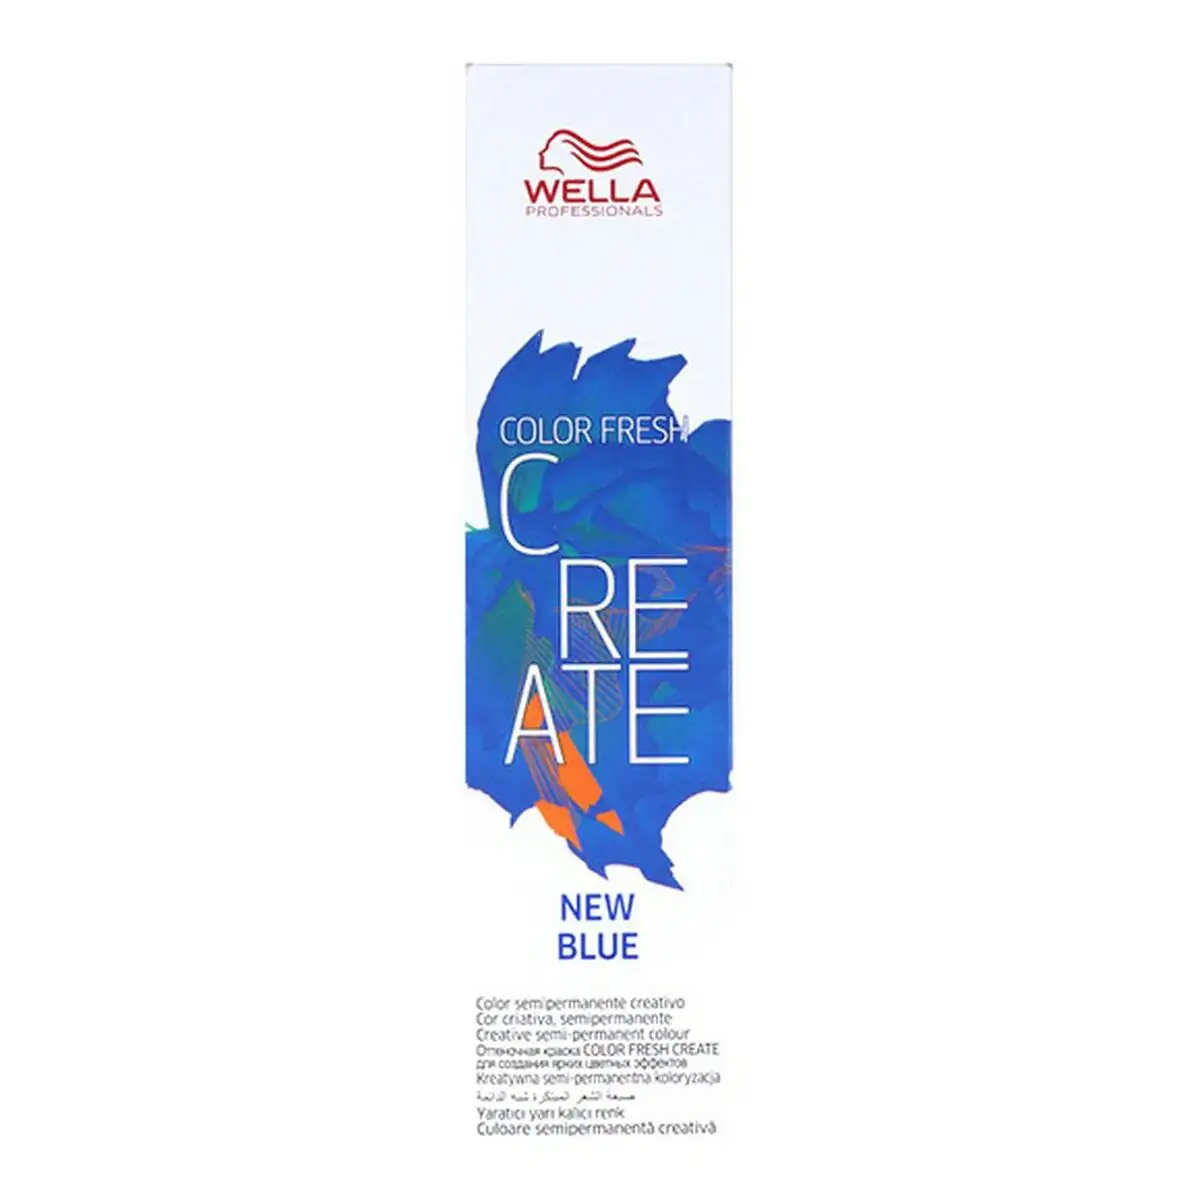 Couleur semi permanente color fresh create new wella 8005610603247 bleu 60 ml _8011. DIAYTAR SENEGAL - L'Art de Trouver ce que Vous Aimez. Plongez dans notre assortiment varié et choisissez parmi des produits qui reflètent votre style et répondent à vos besoins.